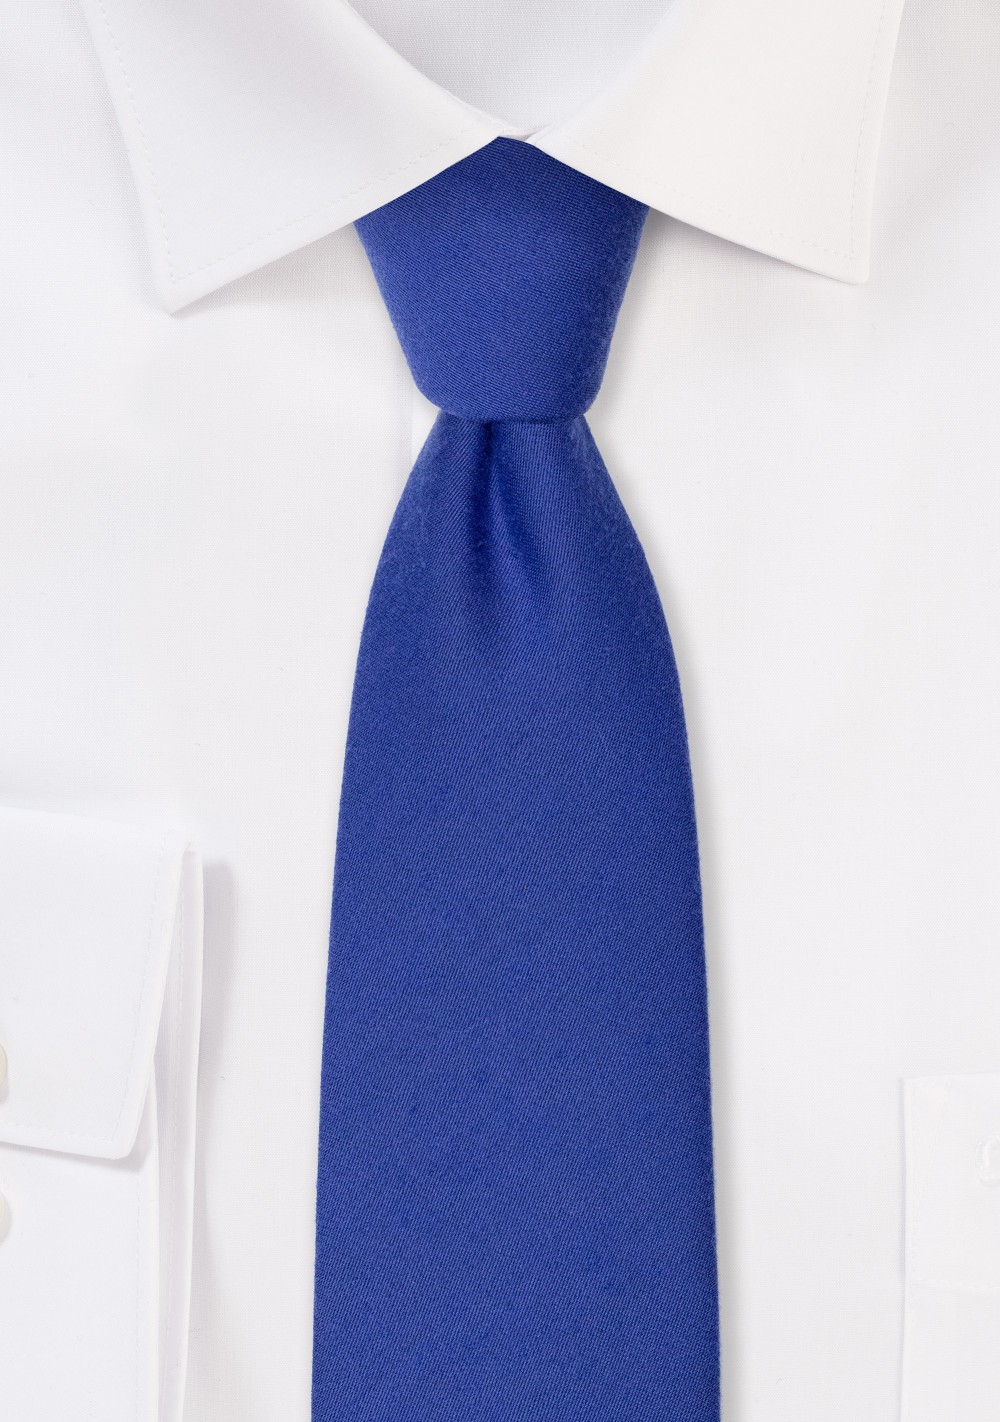 Narrow Woolen Necktie in Marine Blue